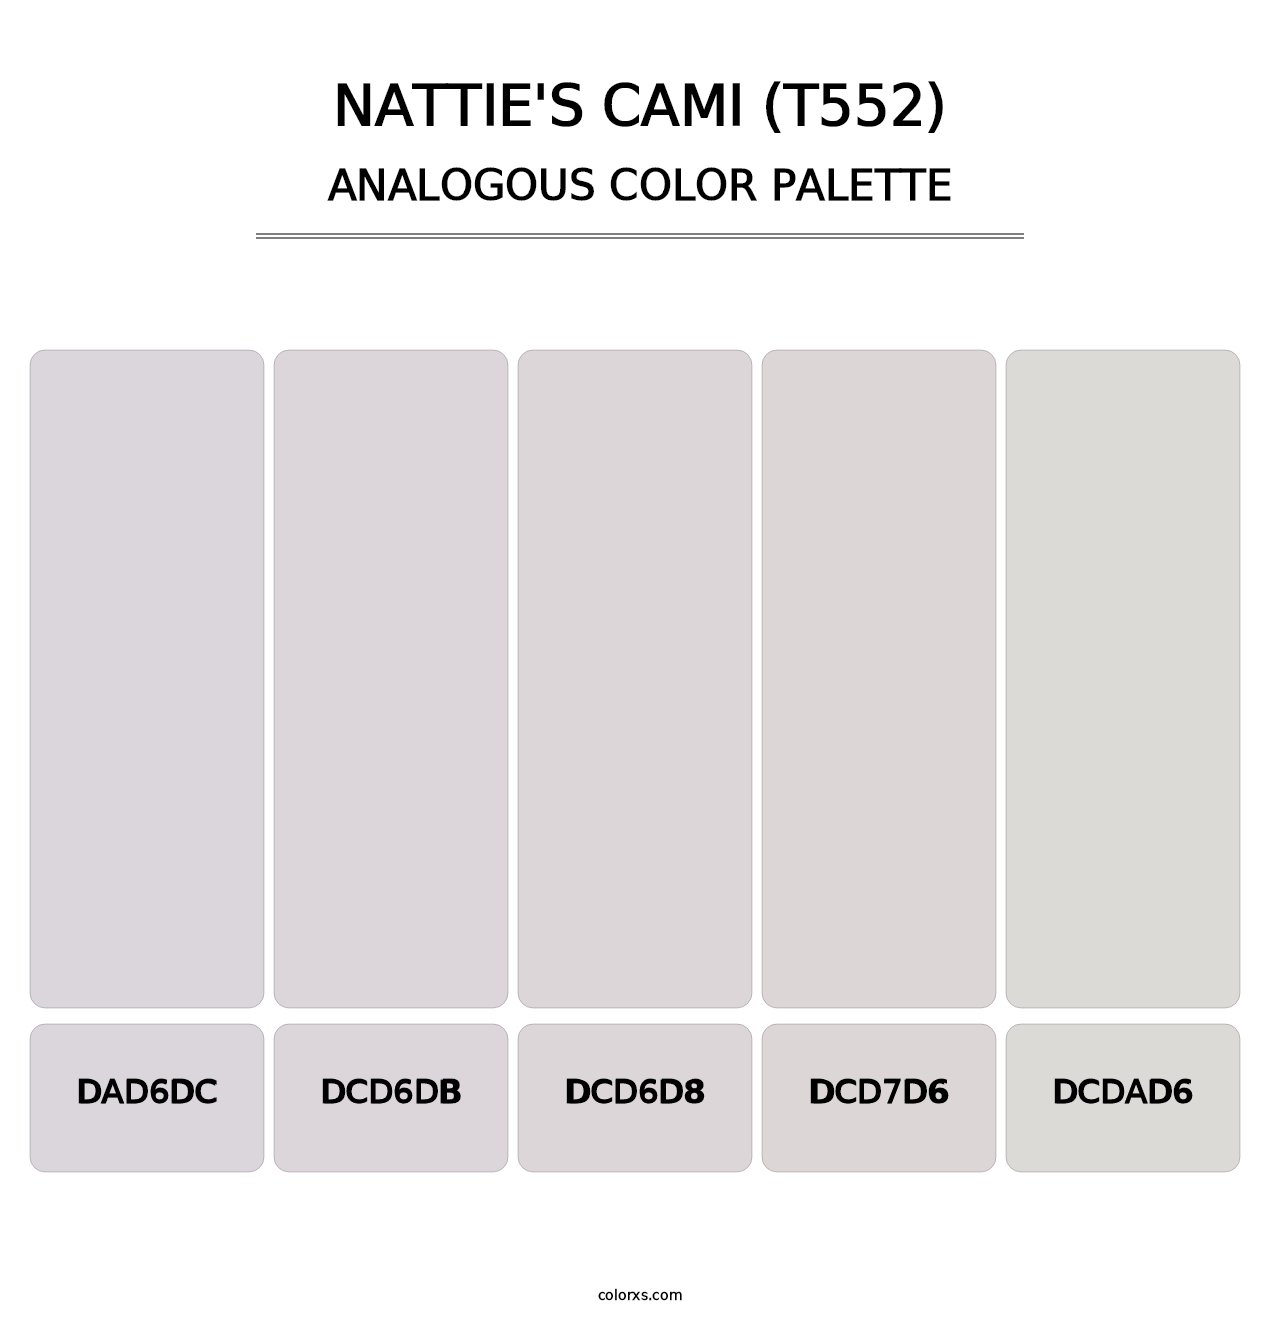 Nattie's Cami (T552) - Analogous Color Palette